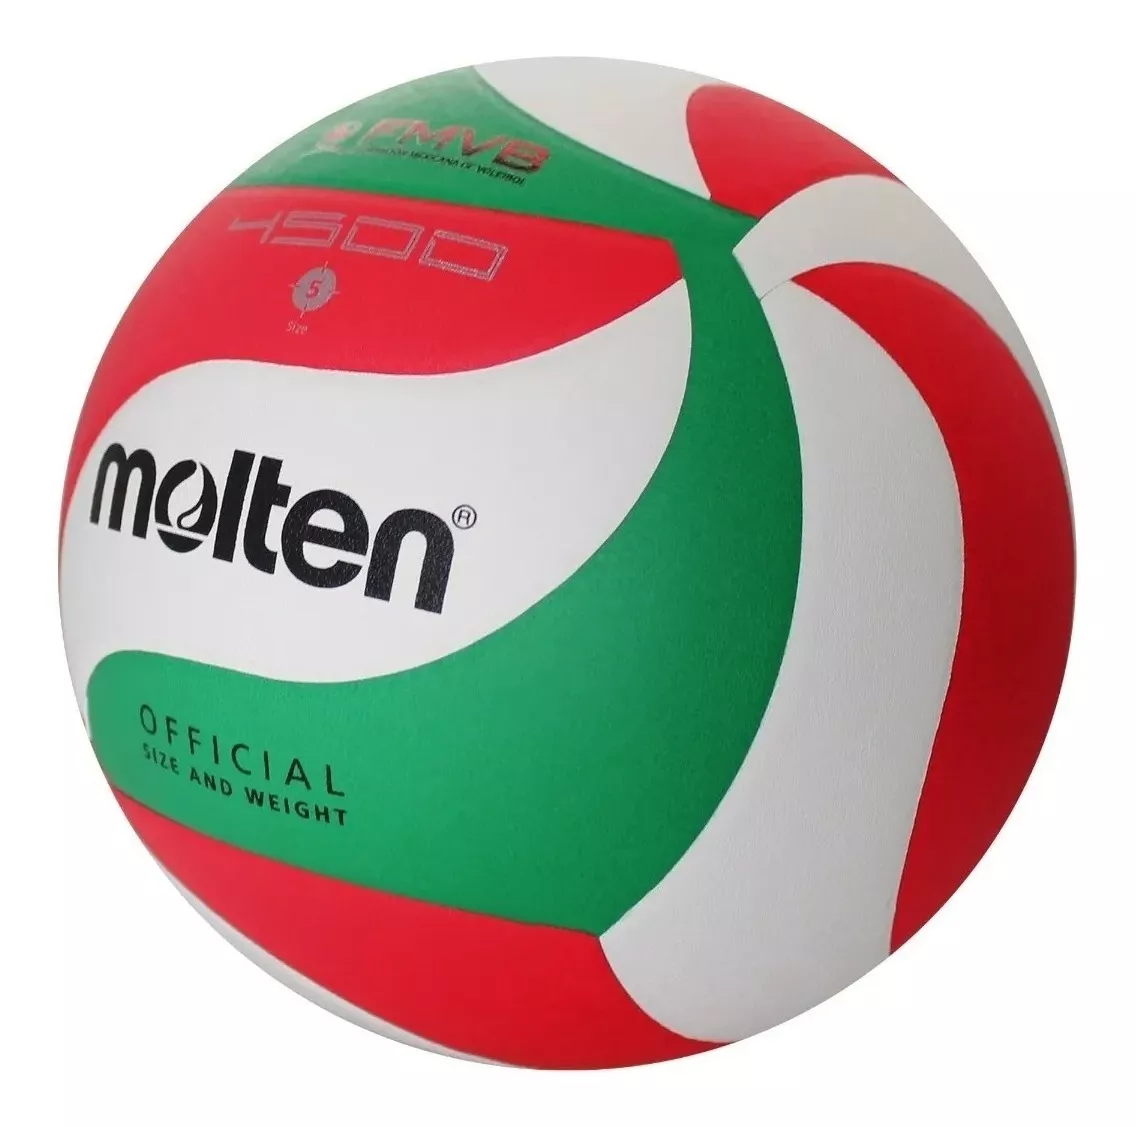 Primera imagen para búsqueda de balon molten voleibol 4500